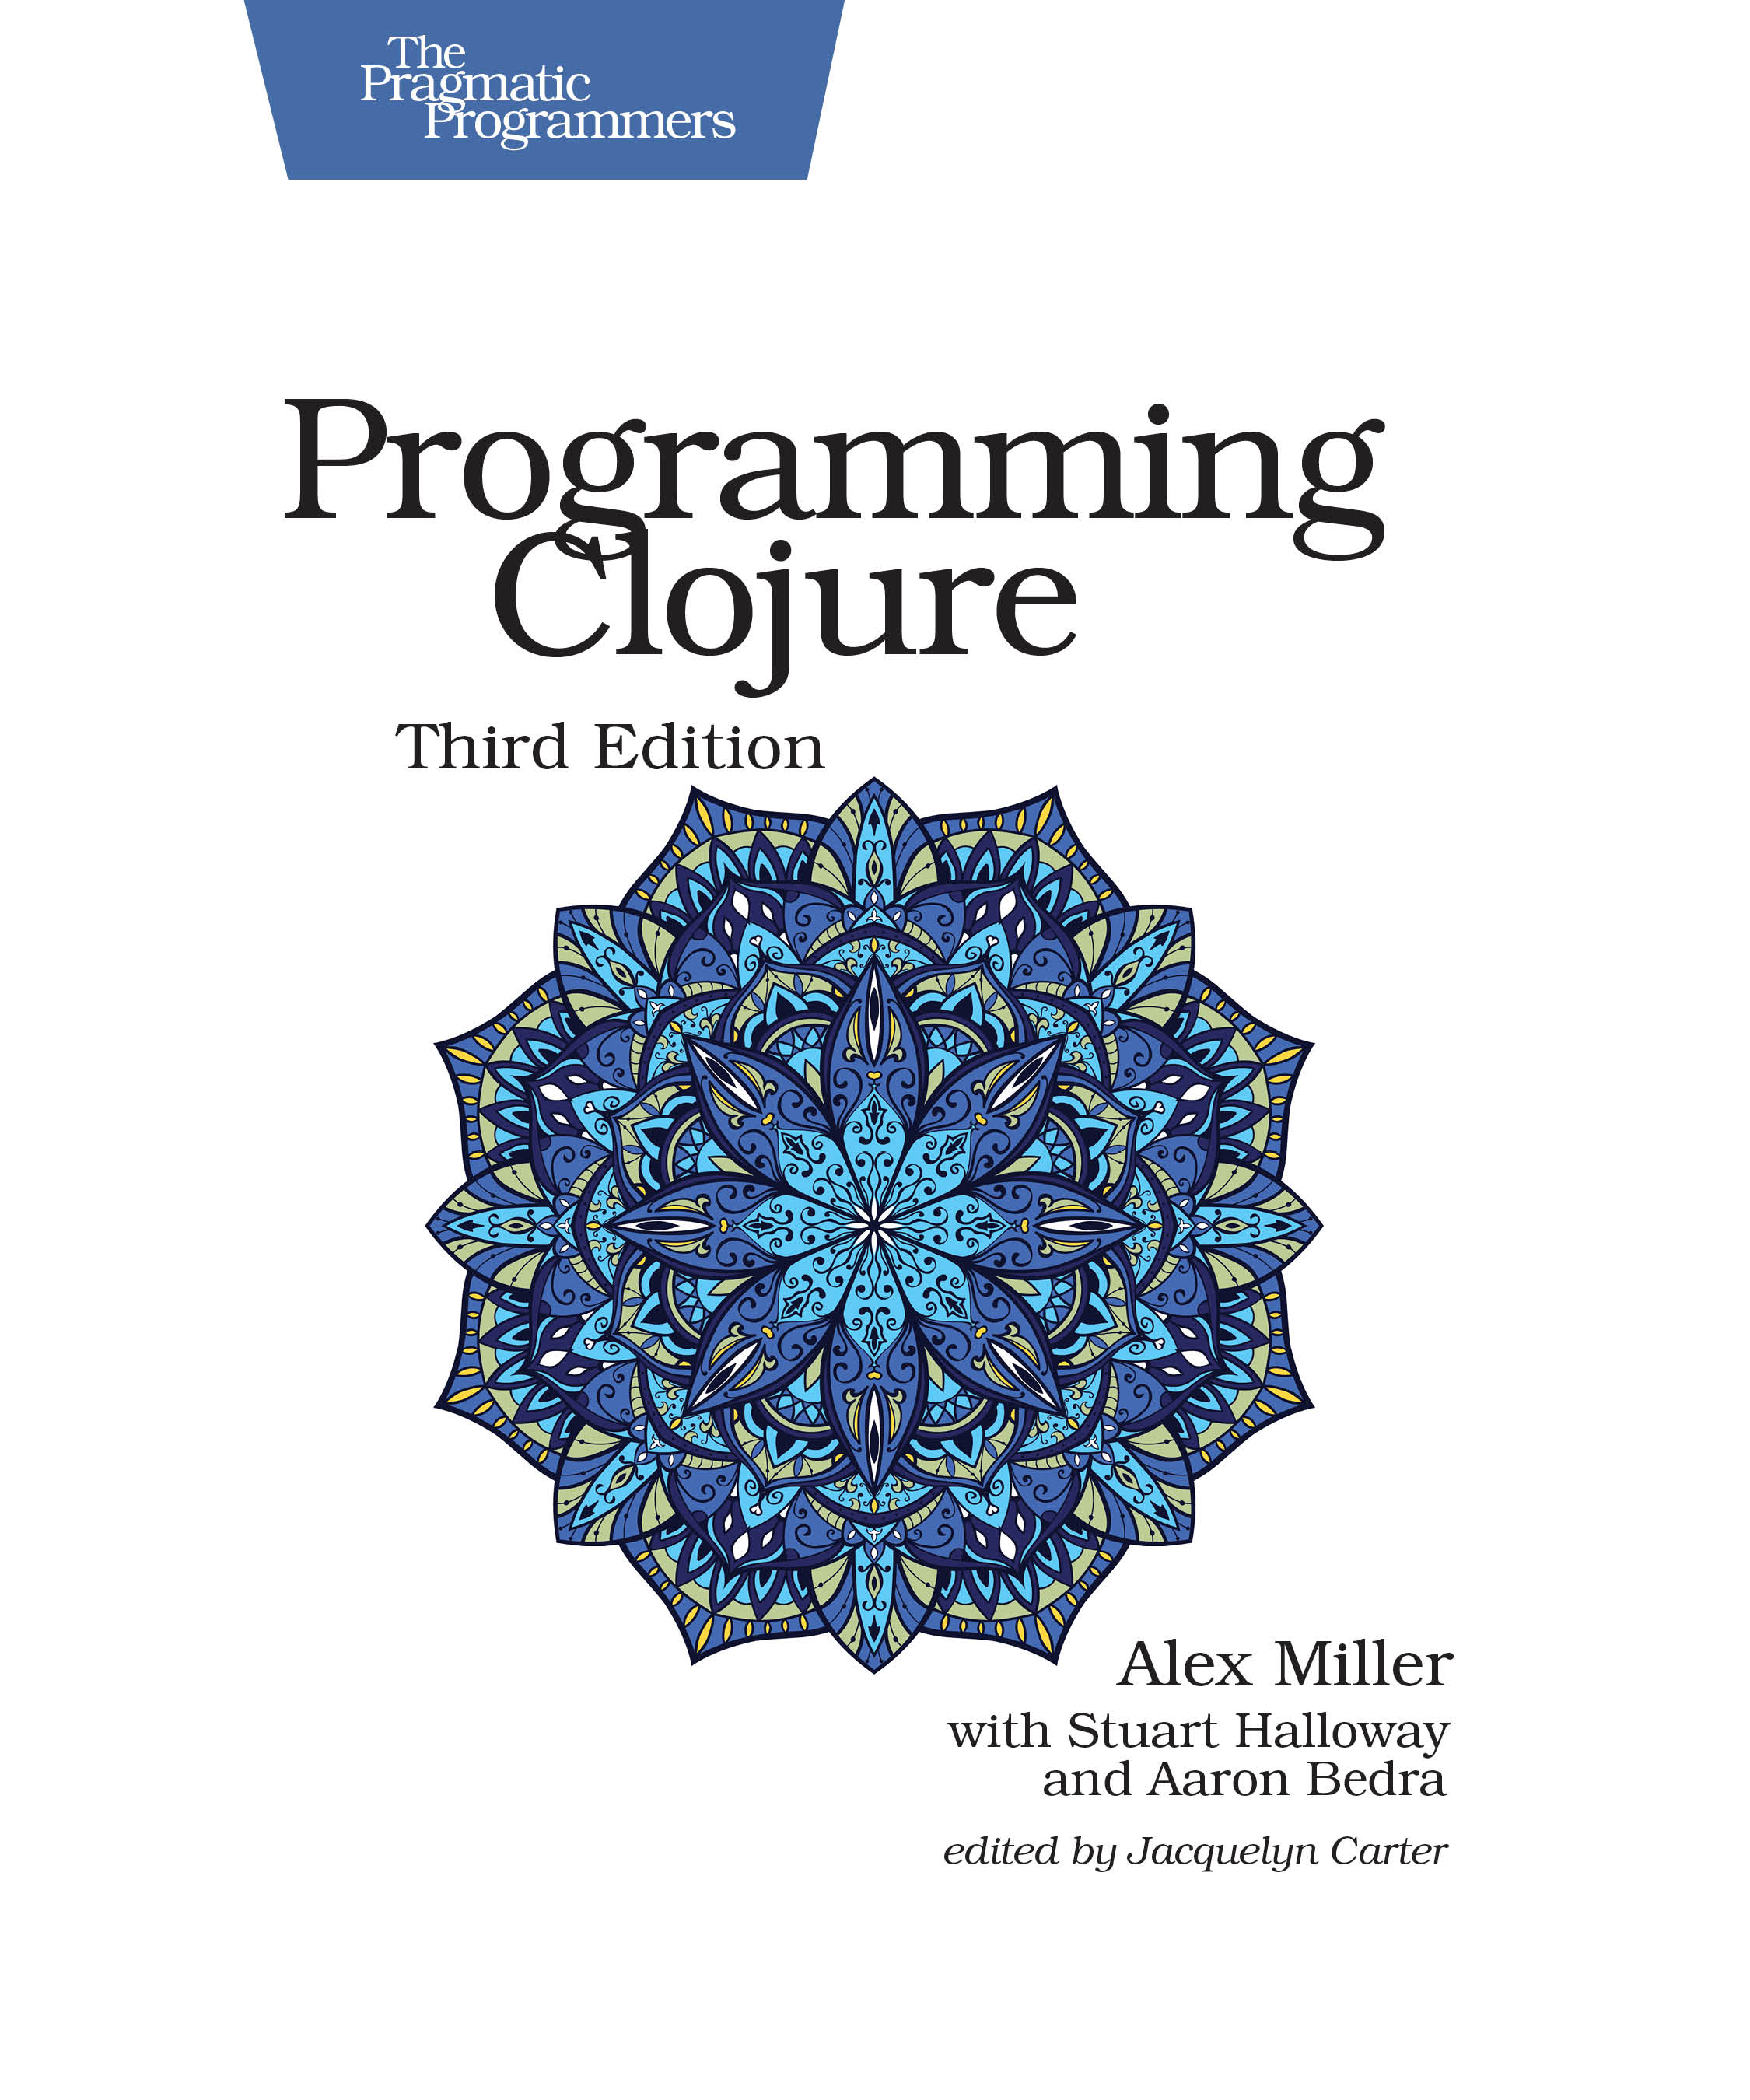 https://pragprog.com/titles/shcloj3/programming-clojure-third-edition/shcloj3.jpg